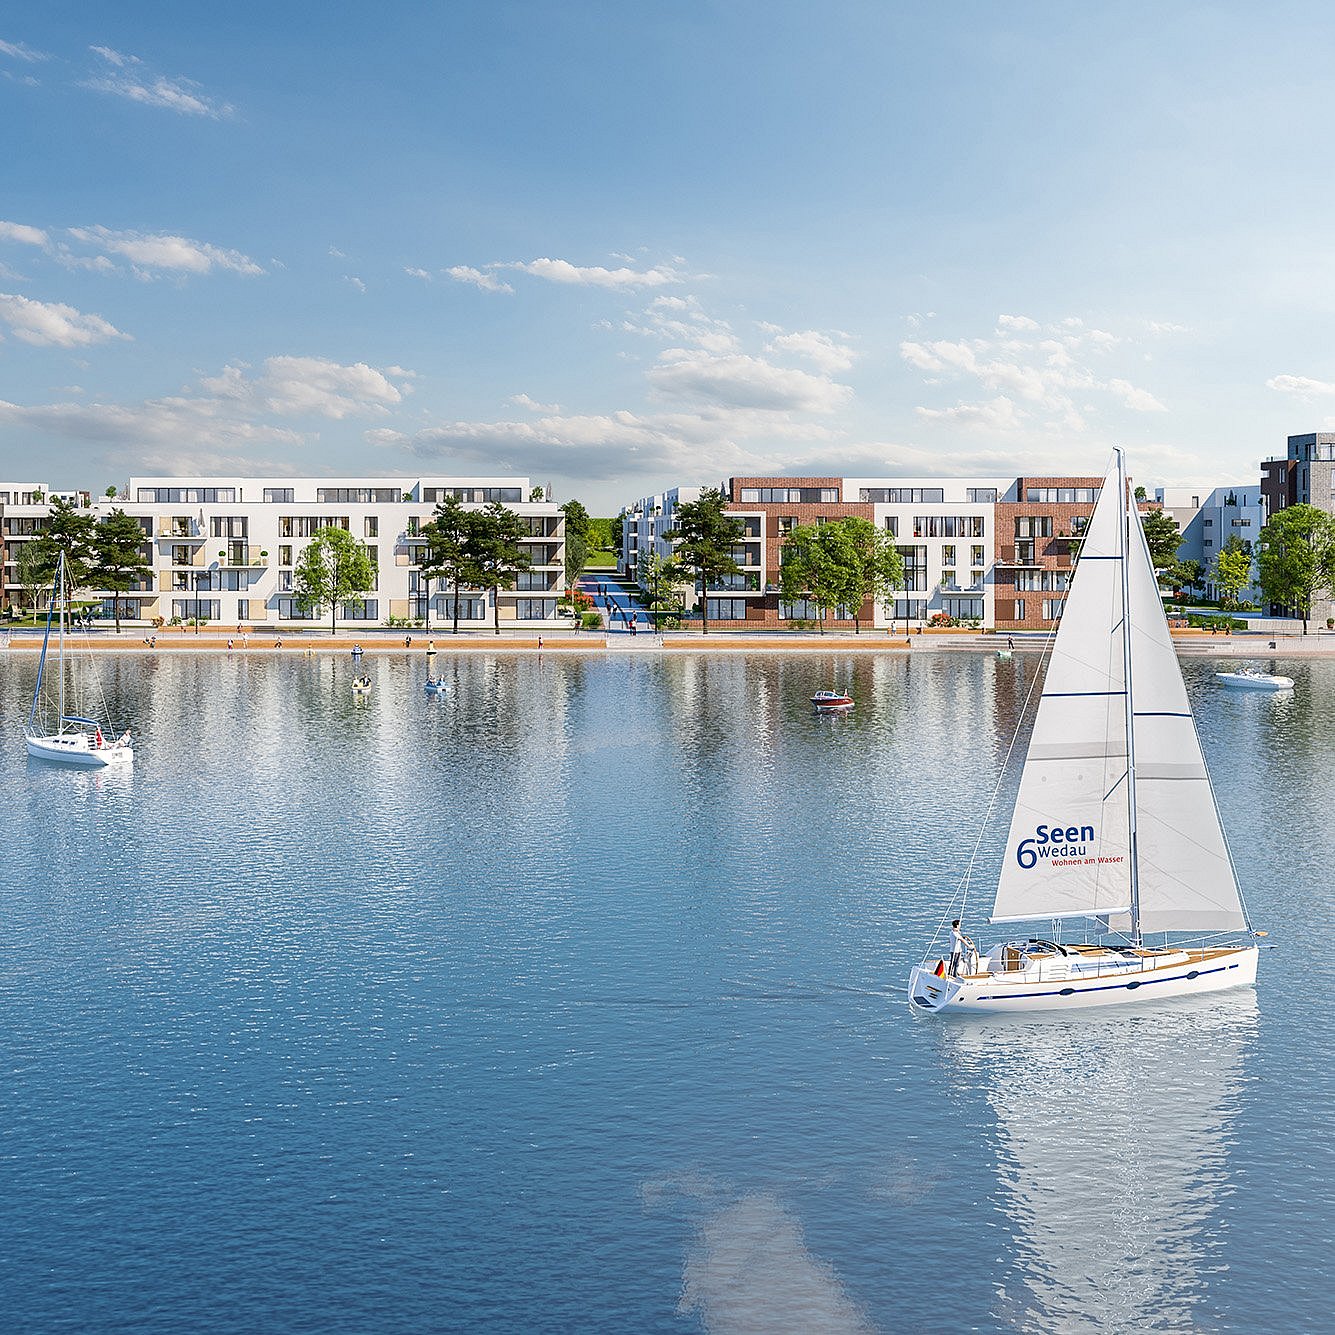 Ein Rendering des Seequartier bei 6-Seen-Wedau, einem neuen Quartier in Duisburg. Im Vordergrund befindet sich Wasser mit einem Segelboot, dahinter neue Immobilien.